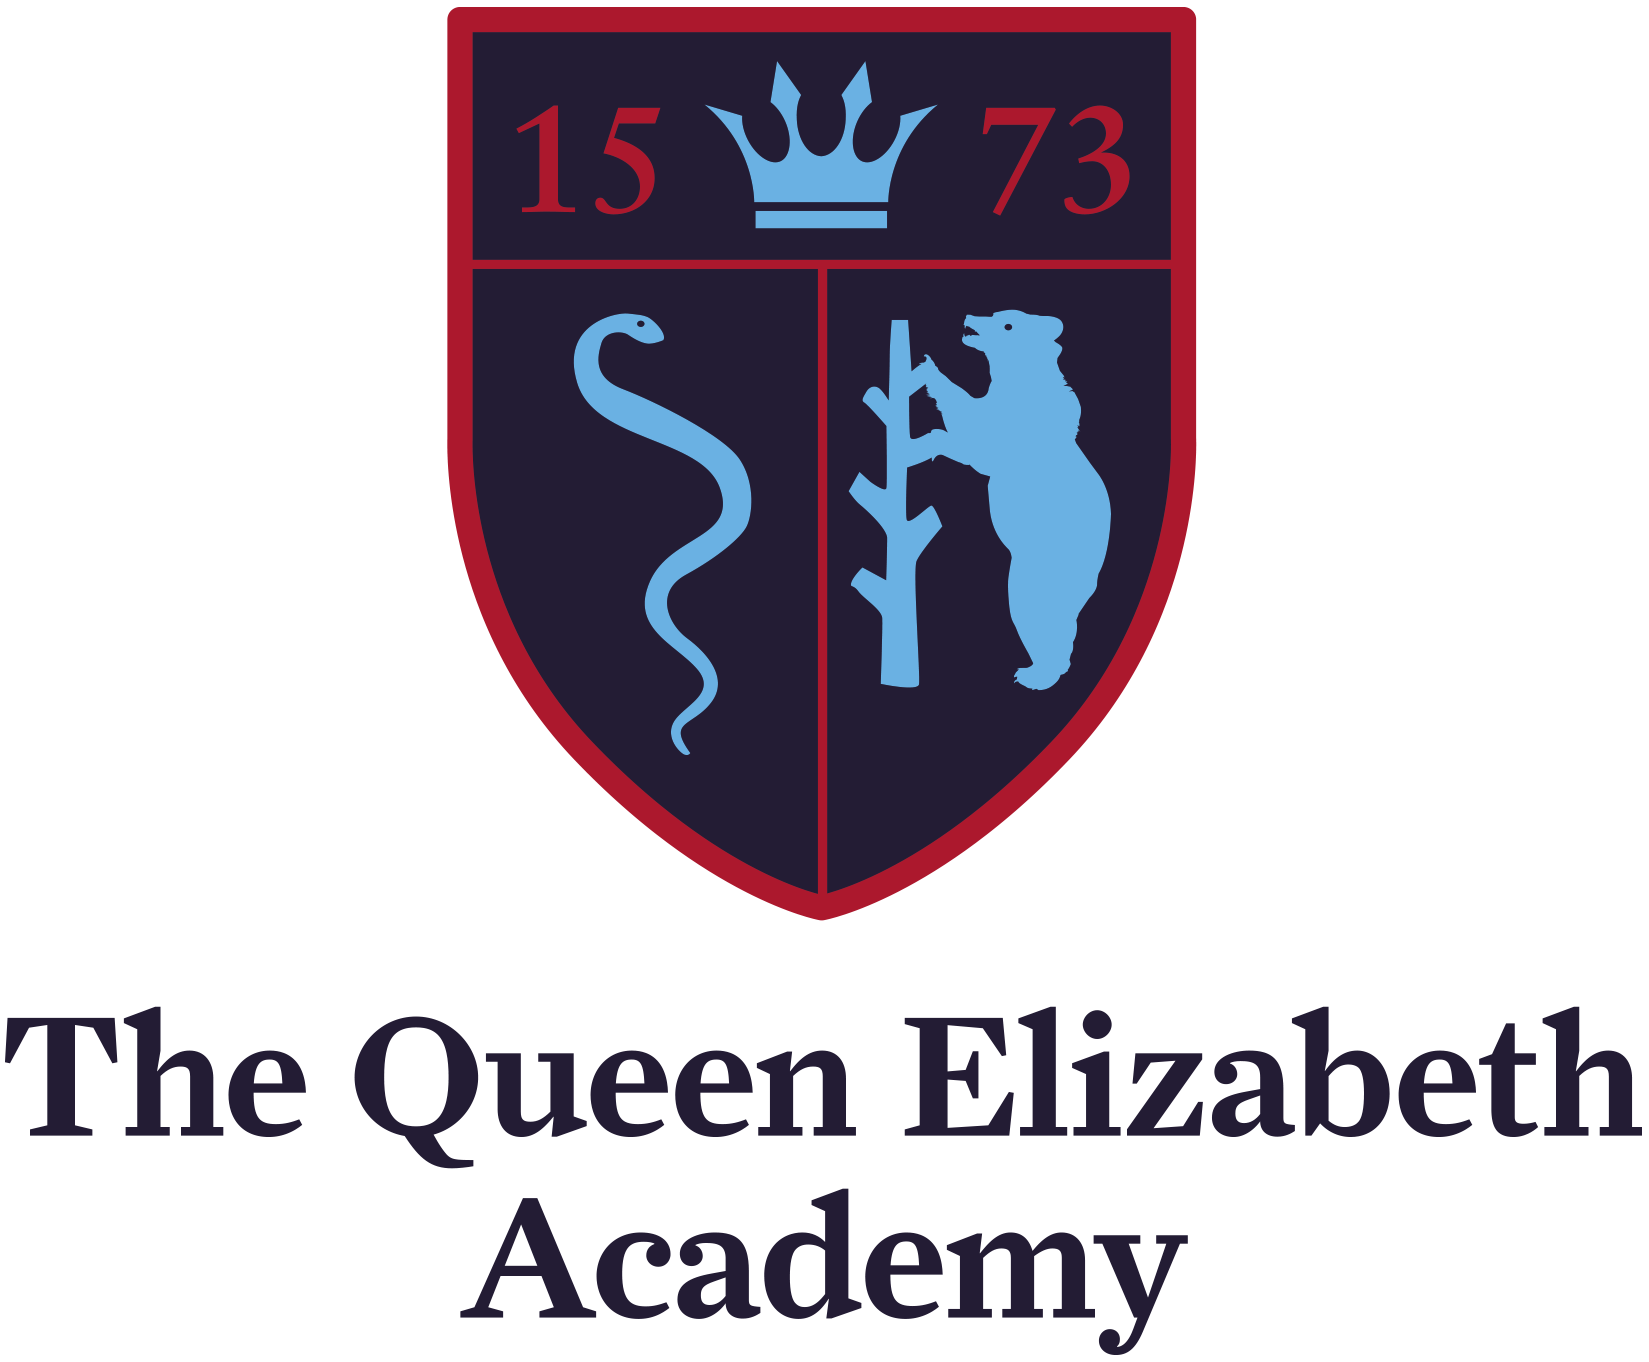 The Queen Elizabeth Academy badge